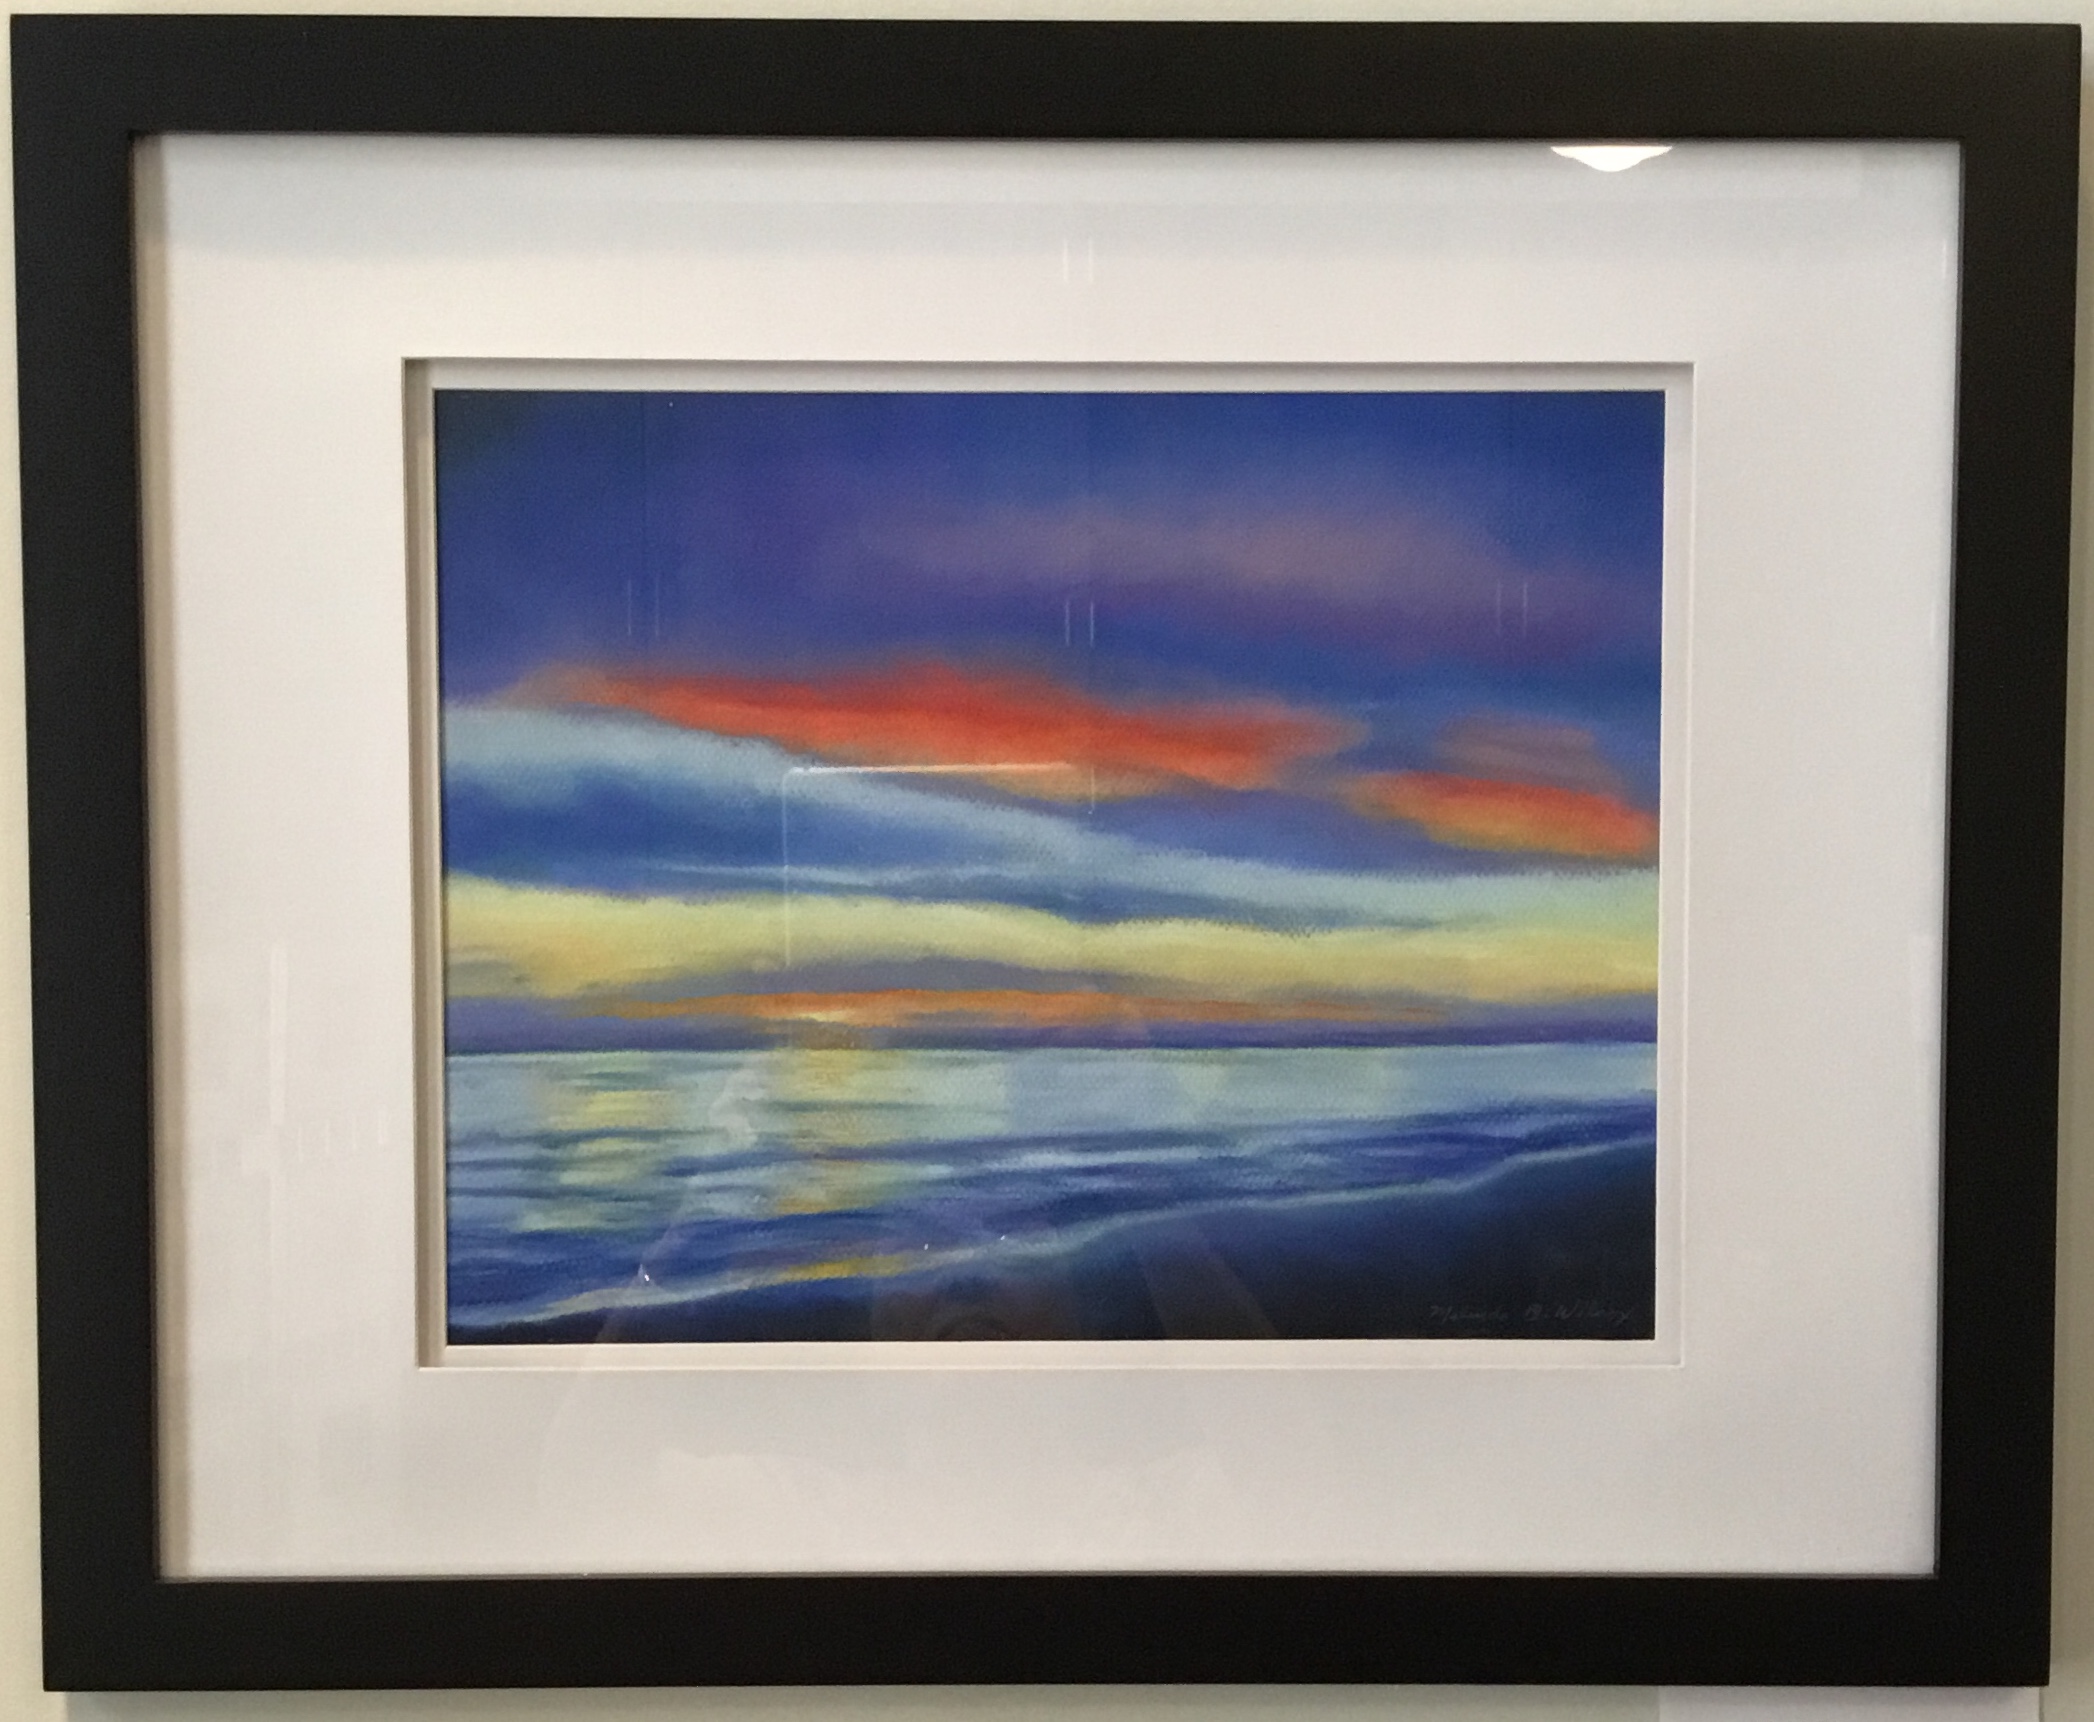 Sanibel Sunset
Pastel
11"x14"
$375.